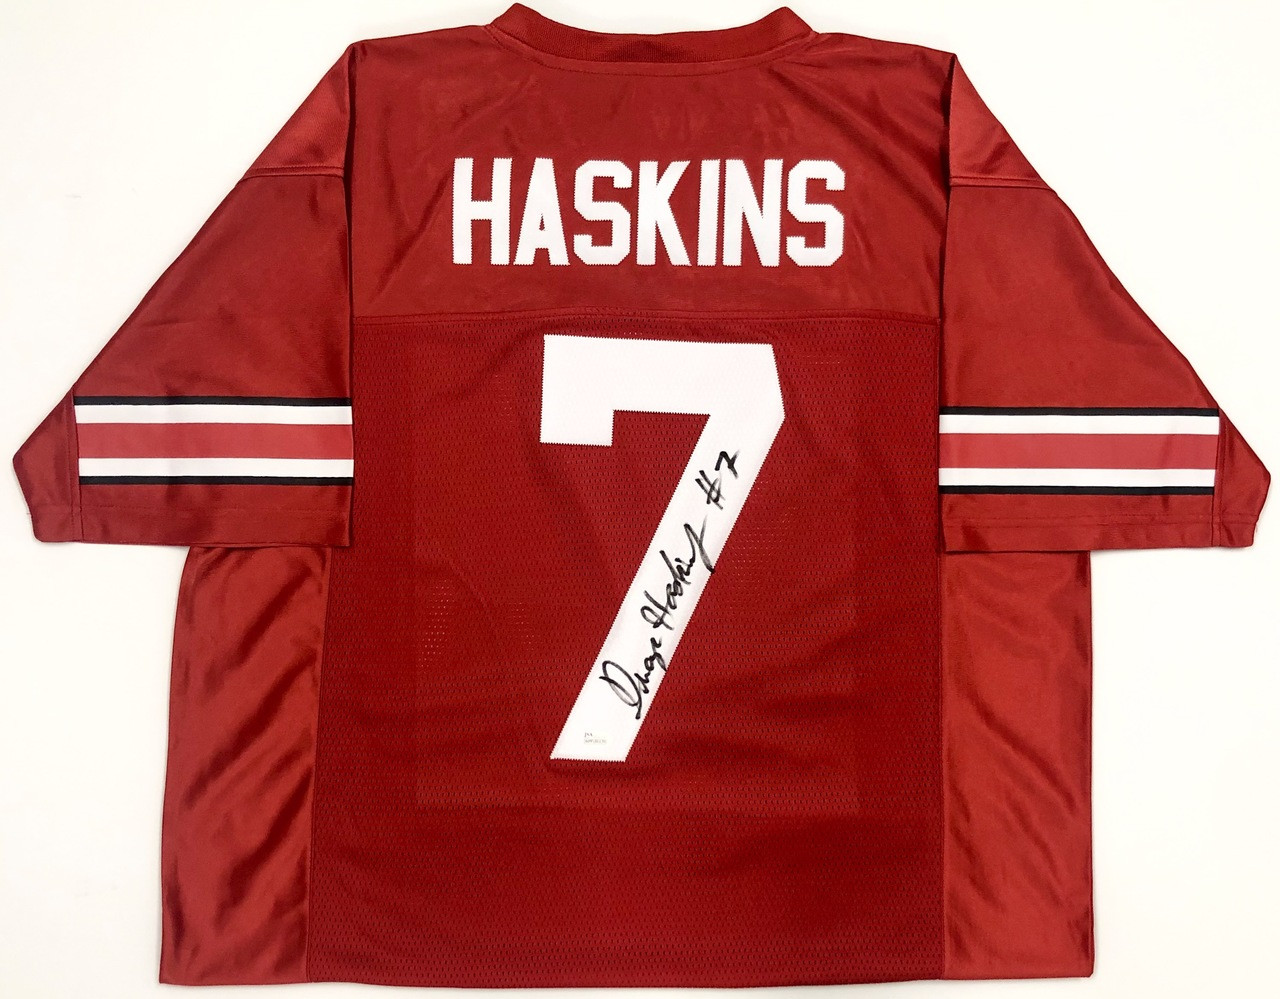 dwayne haskins signed jersey